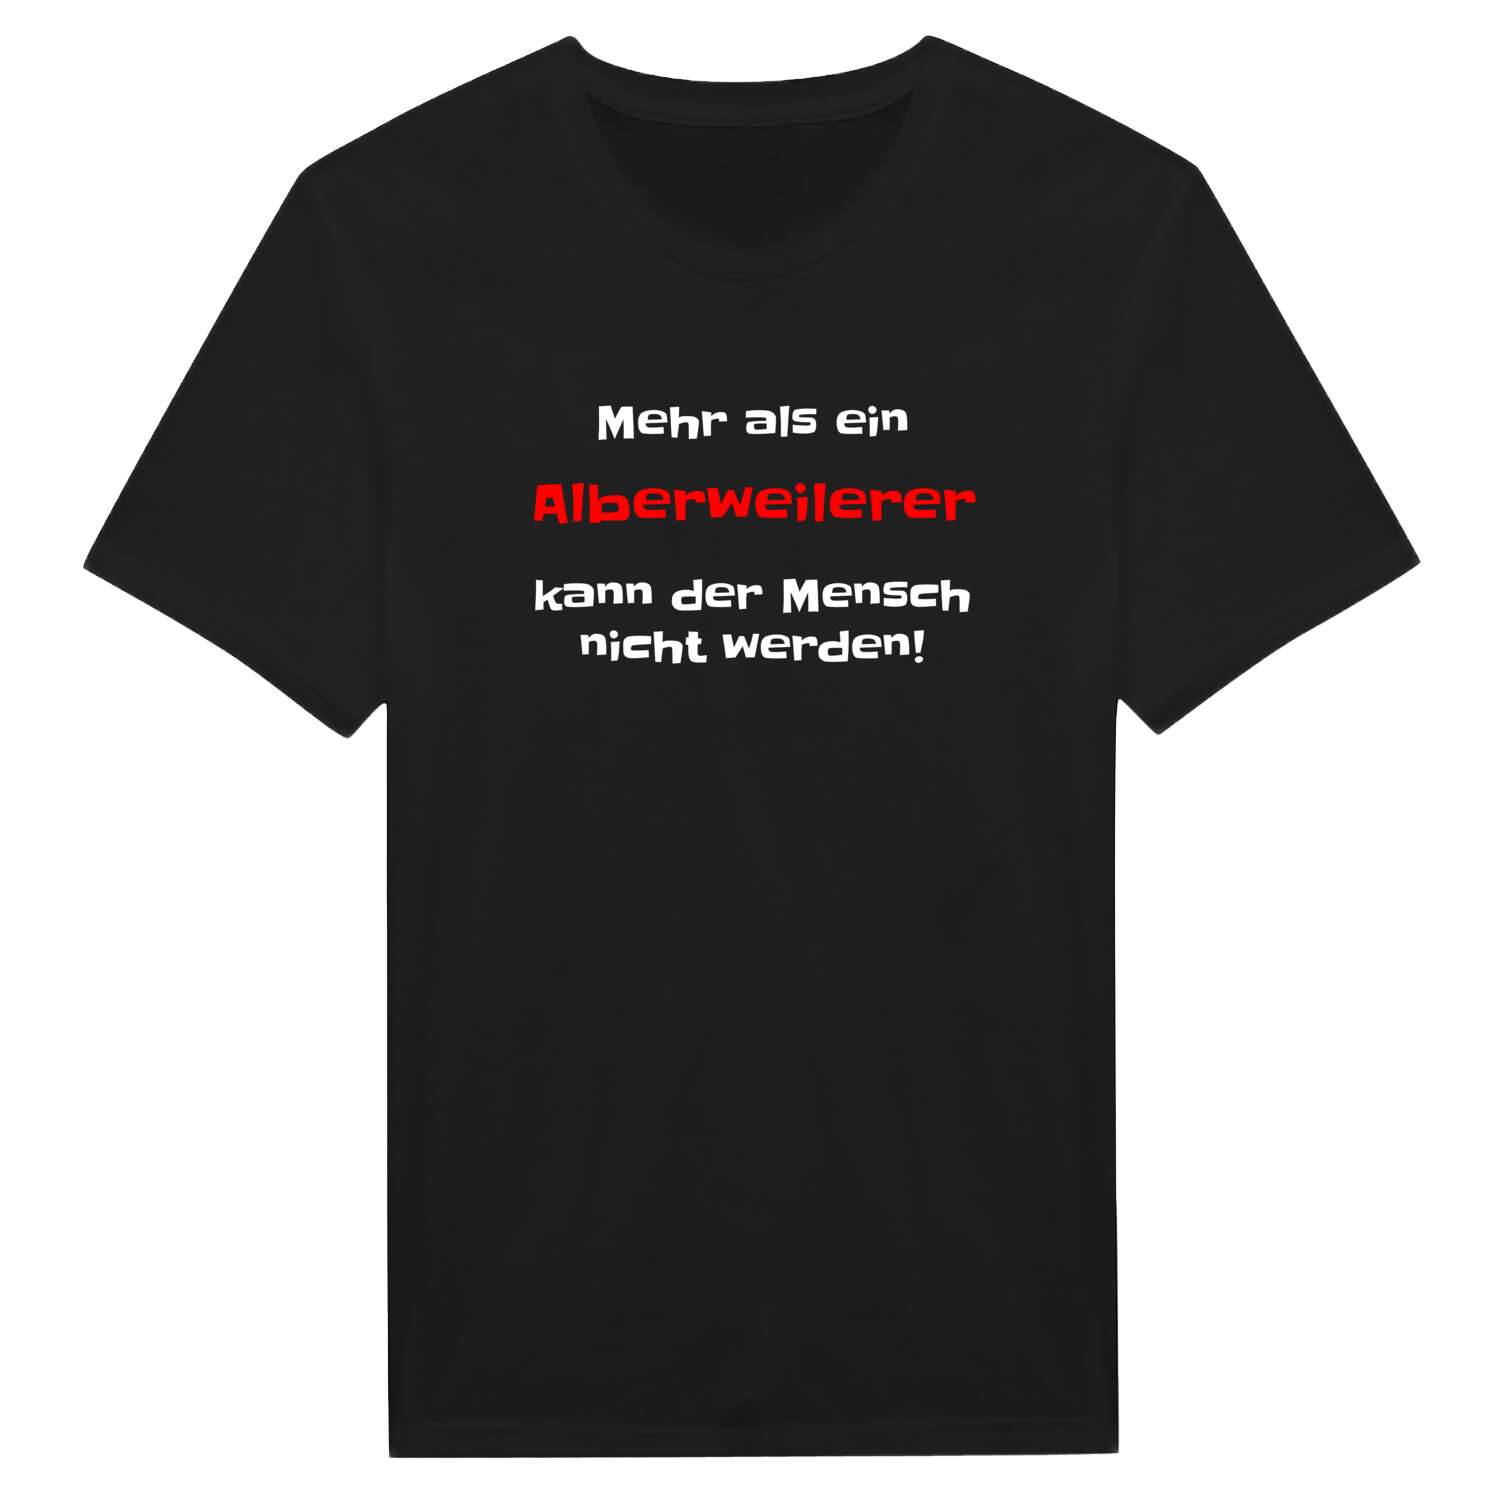 Alberweiler T-Shirt »Mehr als ein«